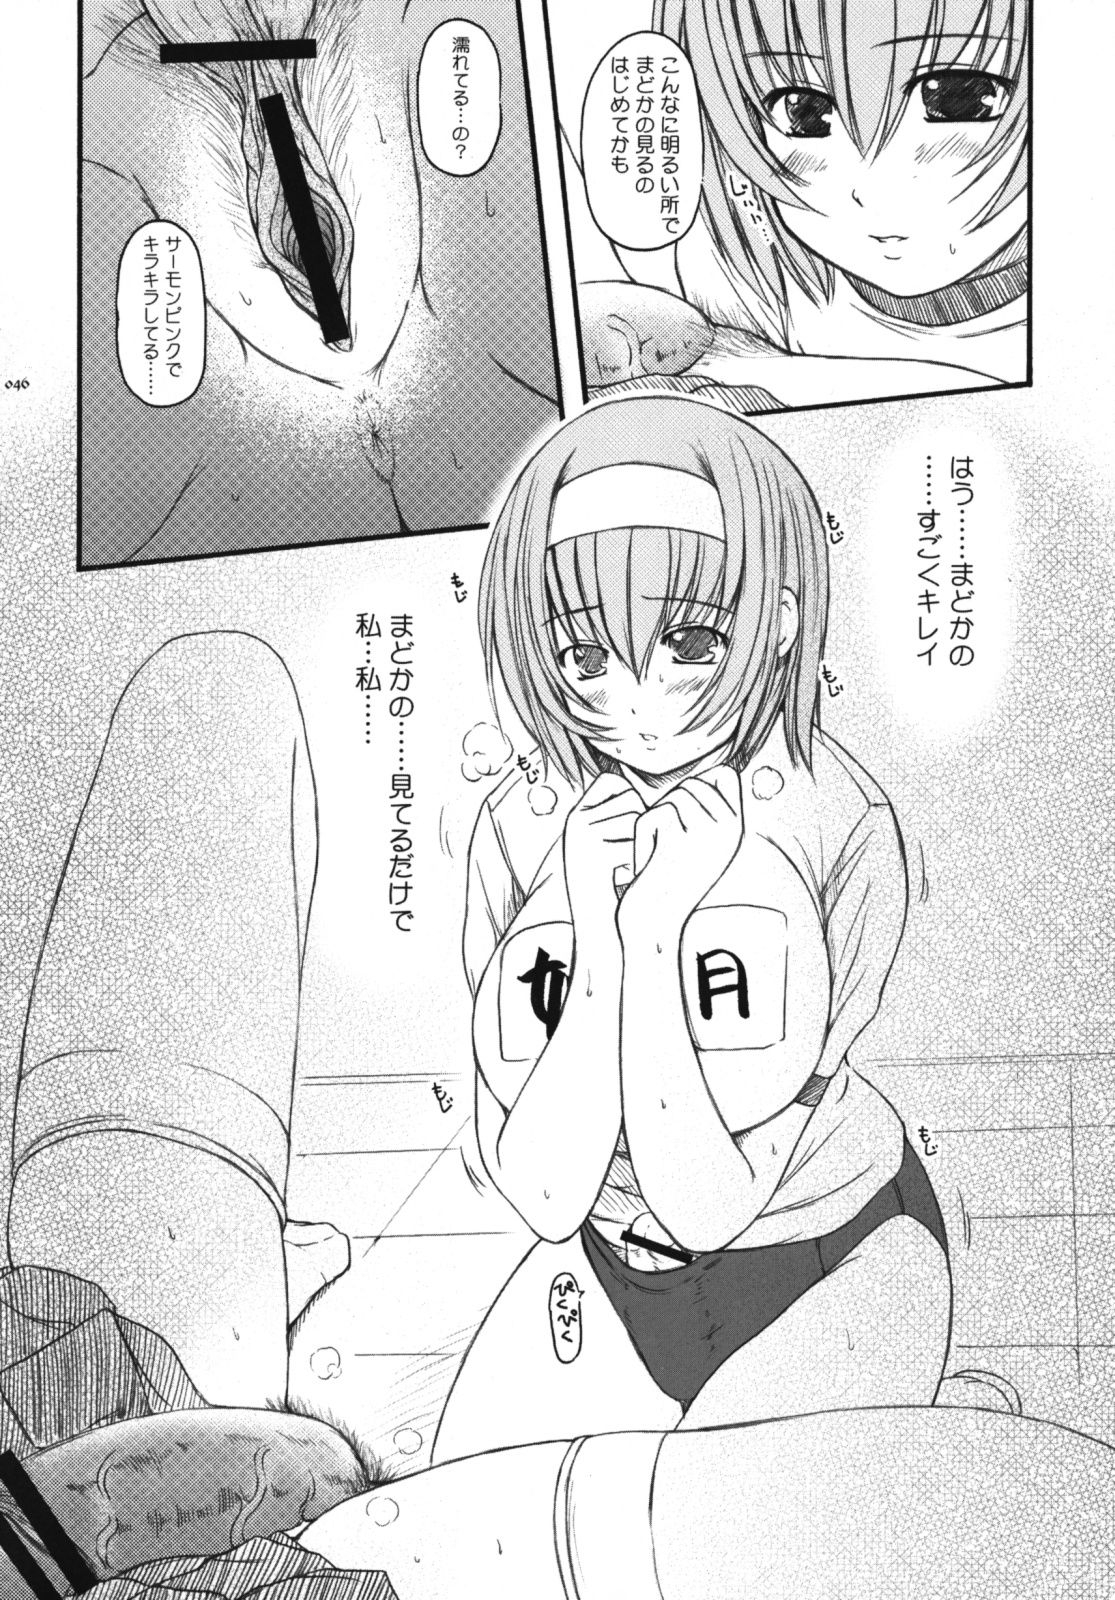 [Kesson Shoujo] Kesson Shoujo Memories 3 -Futanari Ero Manga- 44